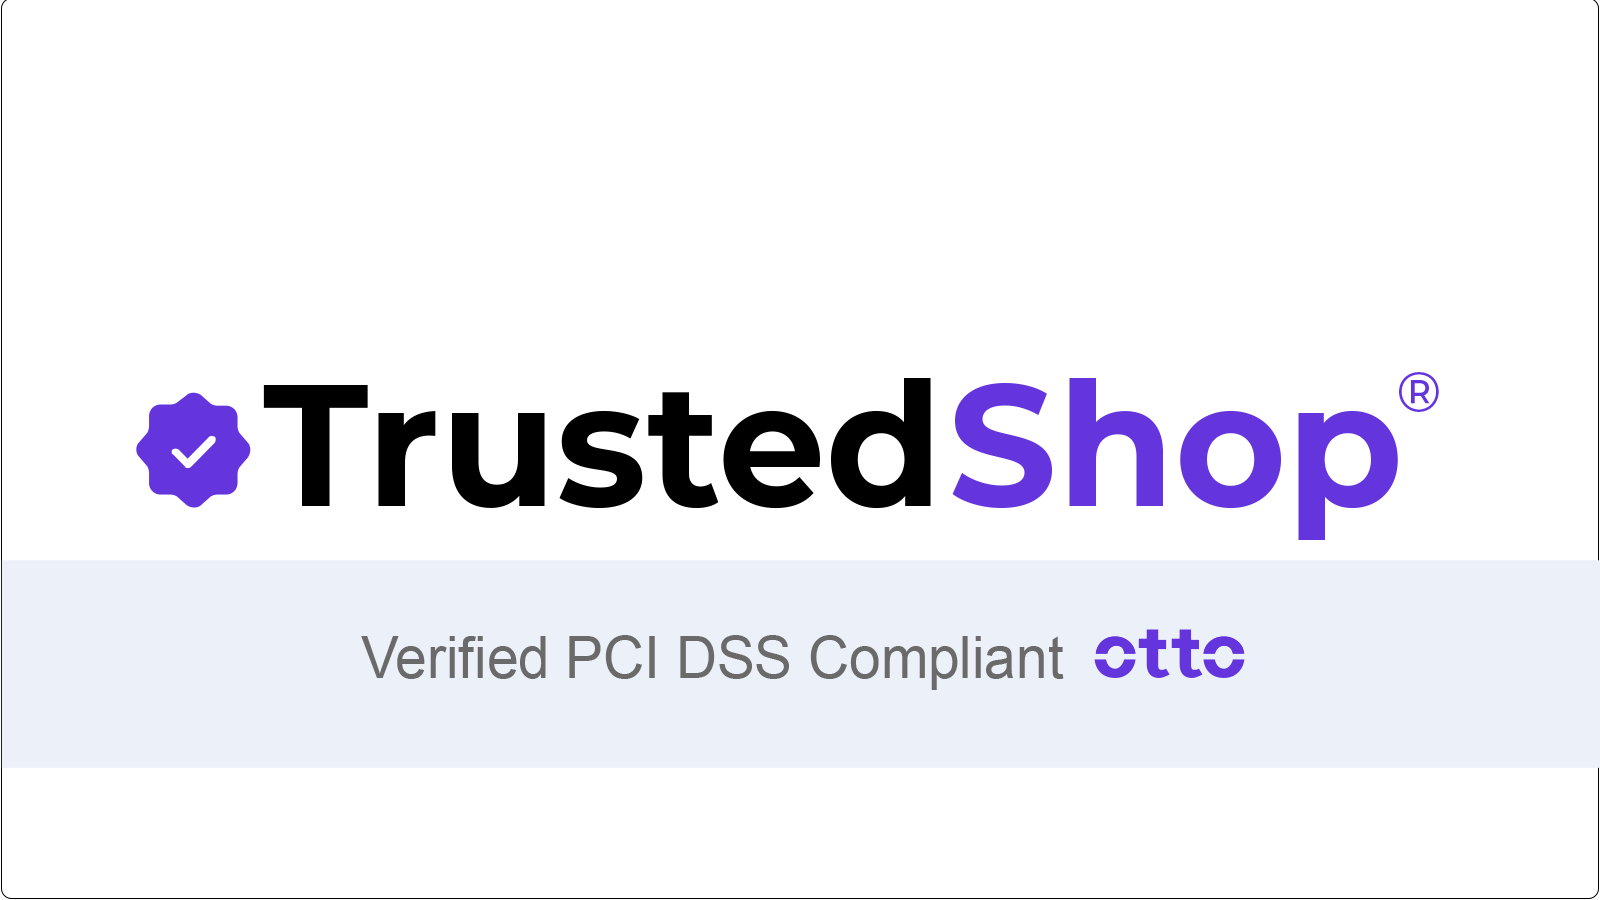 TrustedShop PCI认证徽章给予客户信心